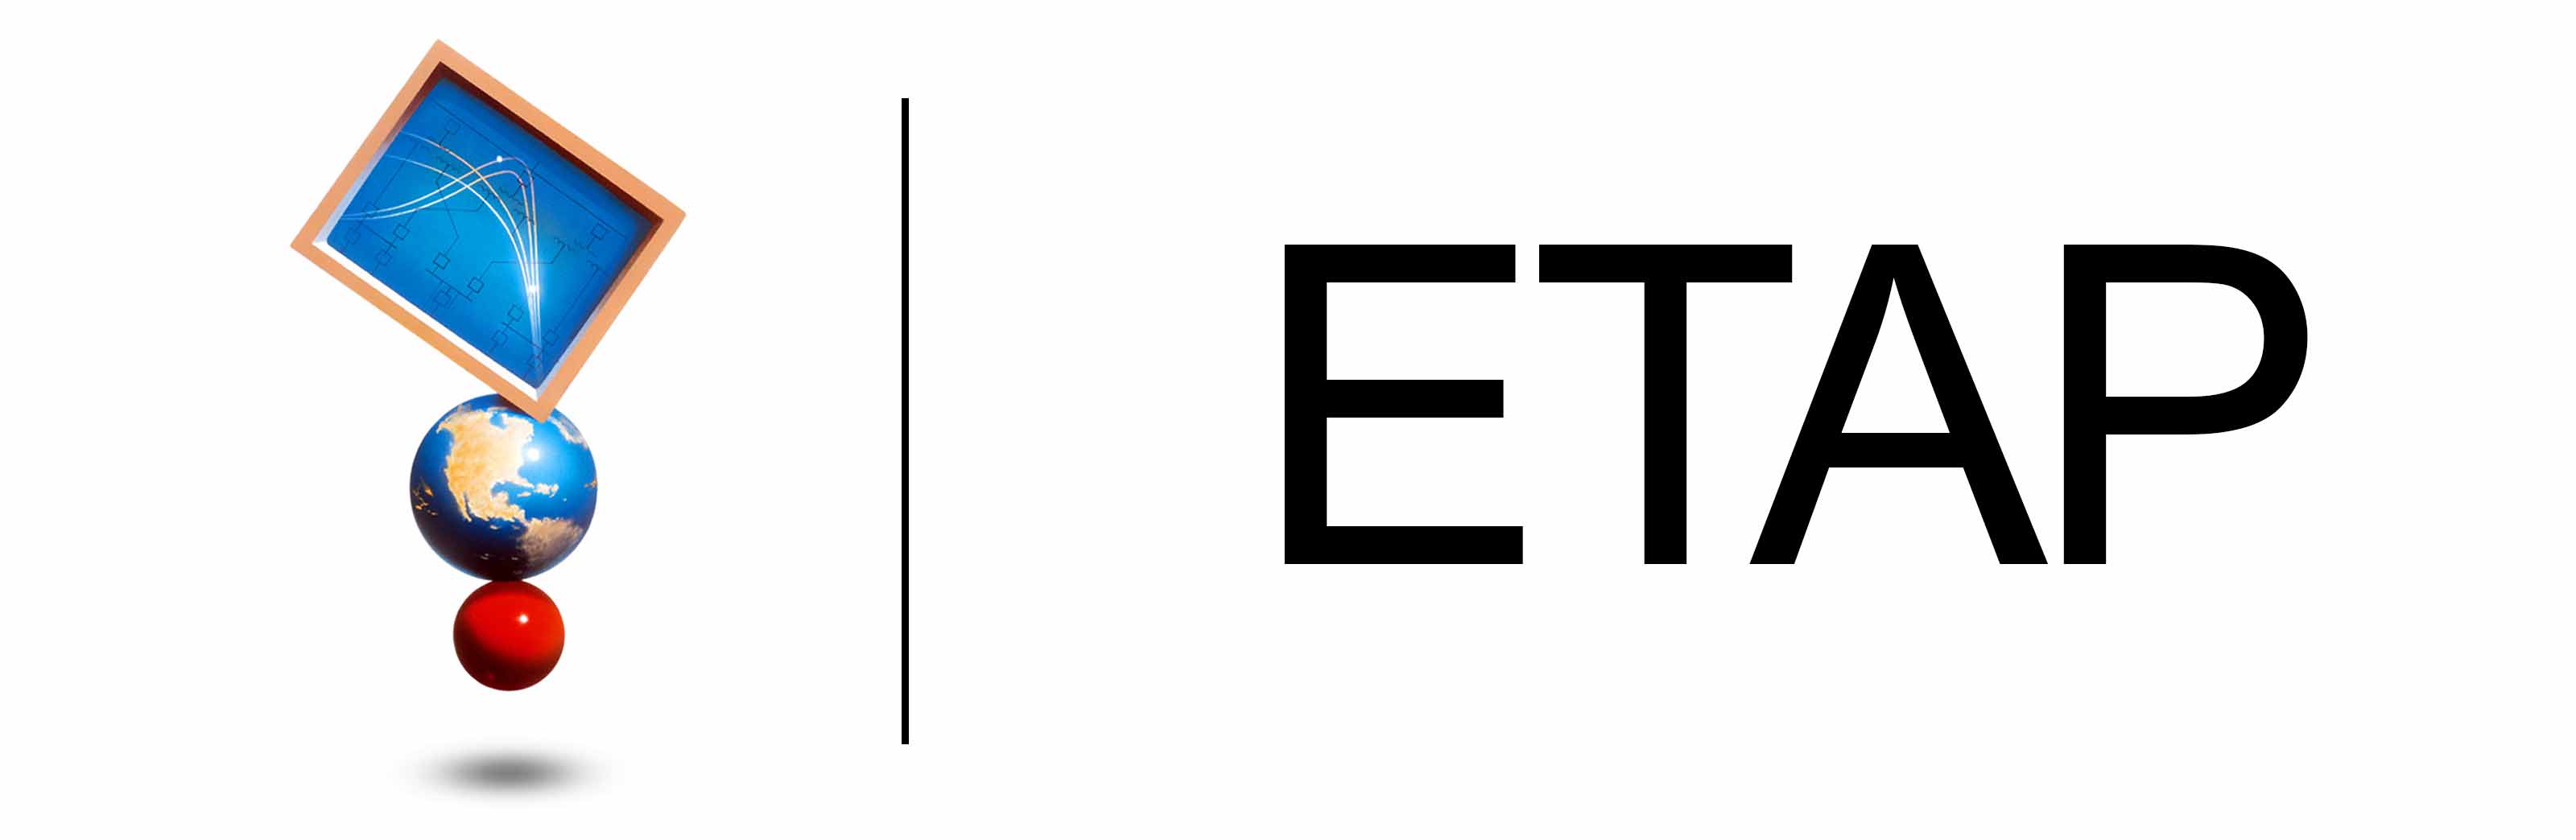 Etap logo mehregan